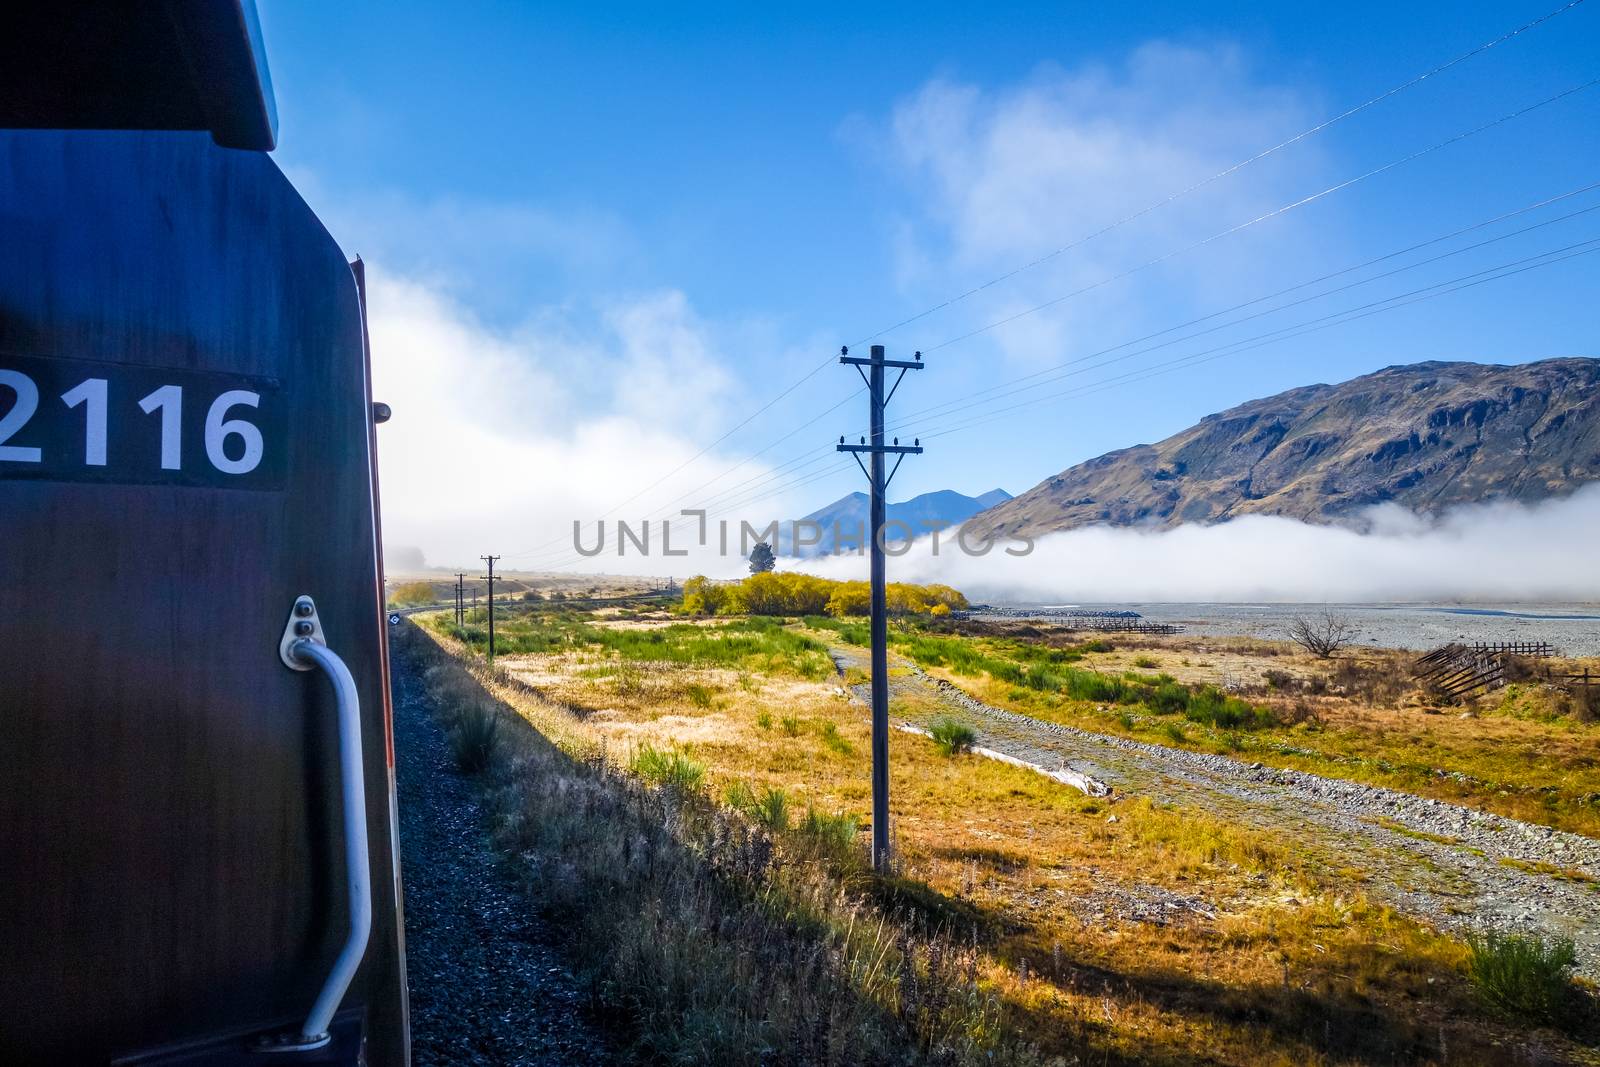 Train in Mountain fields landscape, New Zealand by daboost